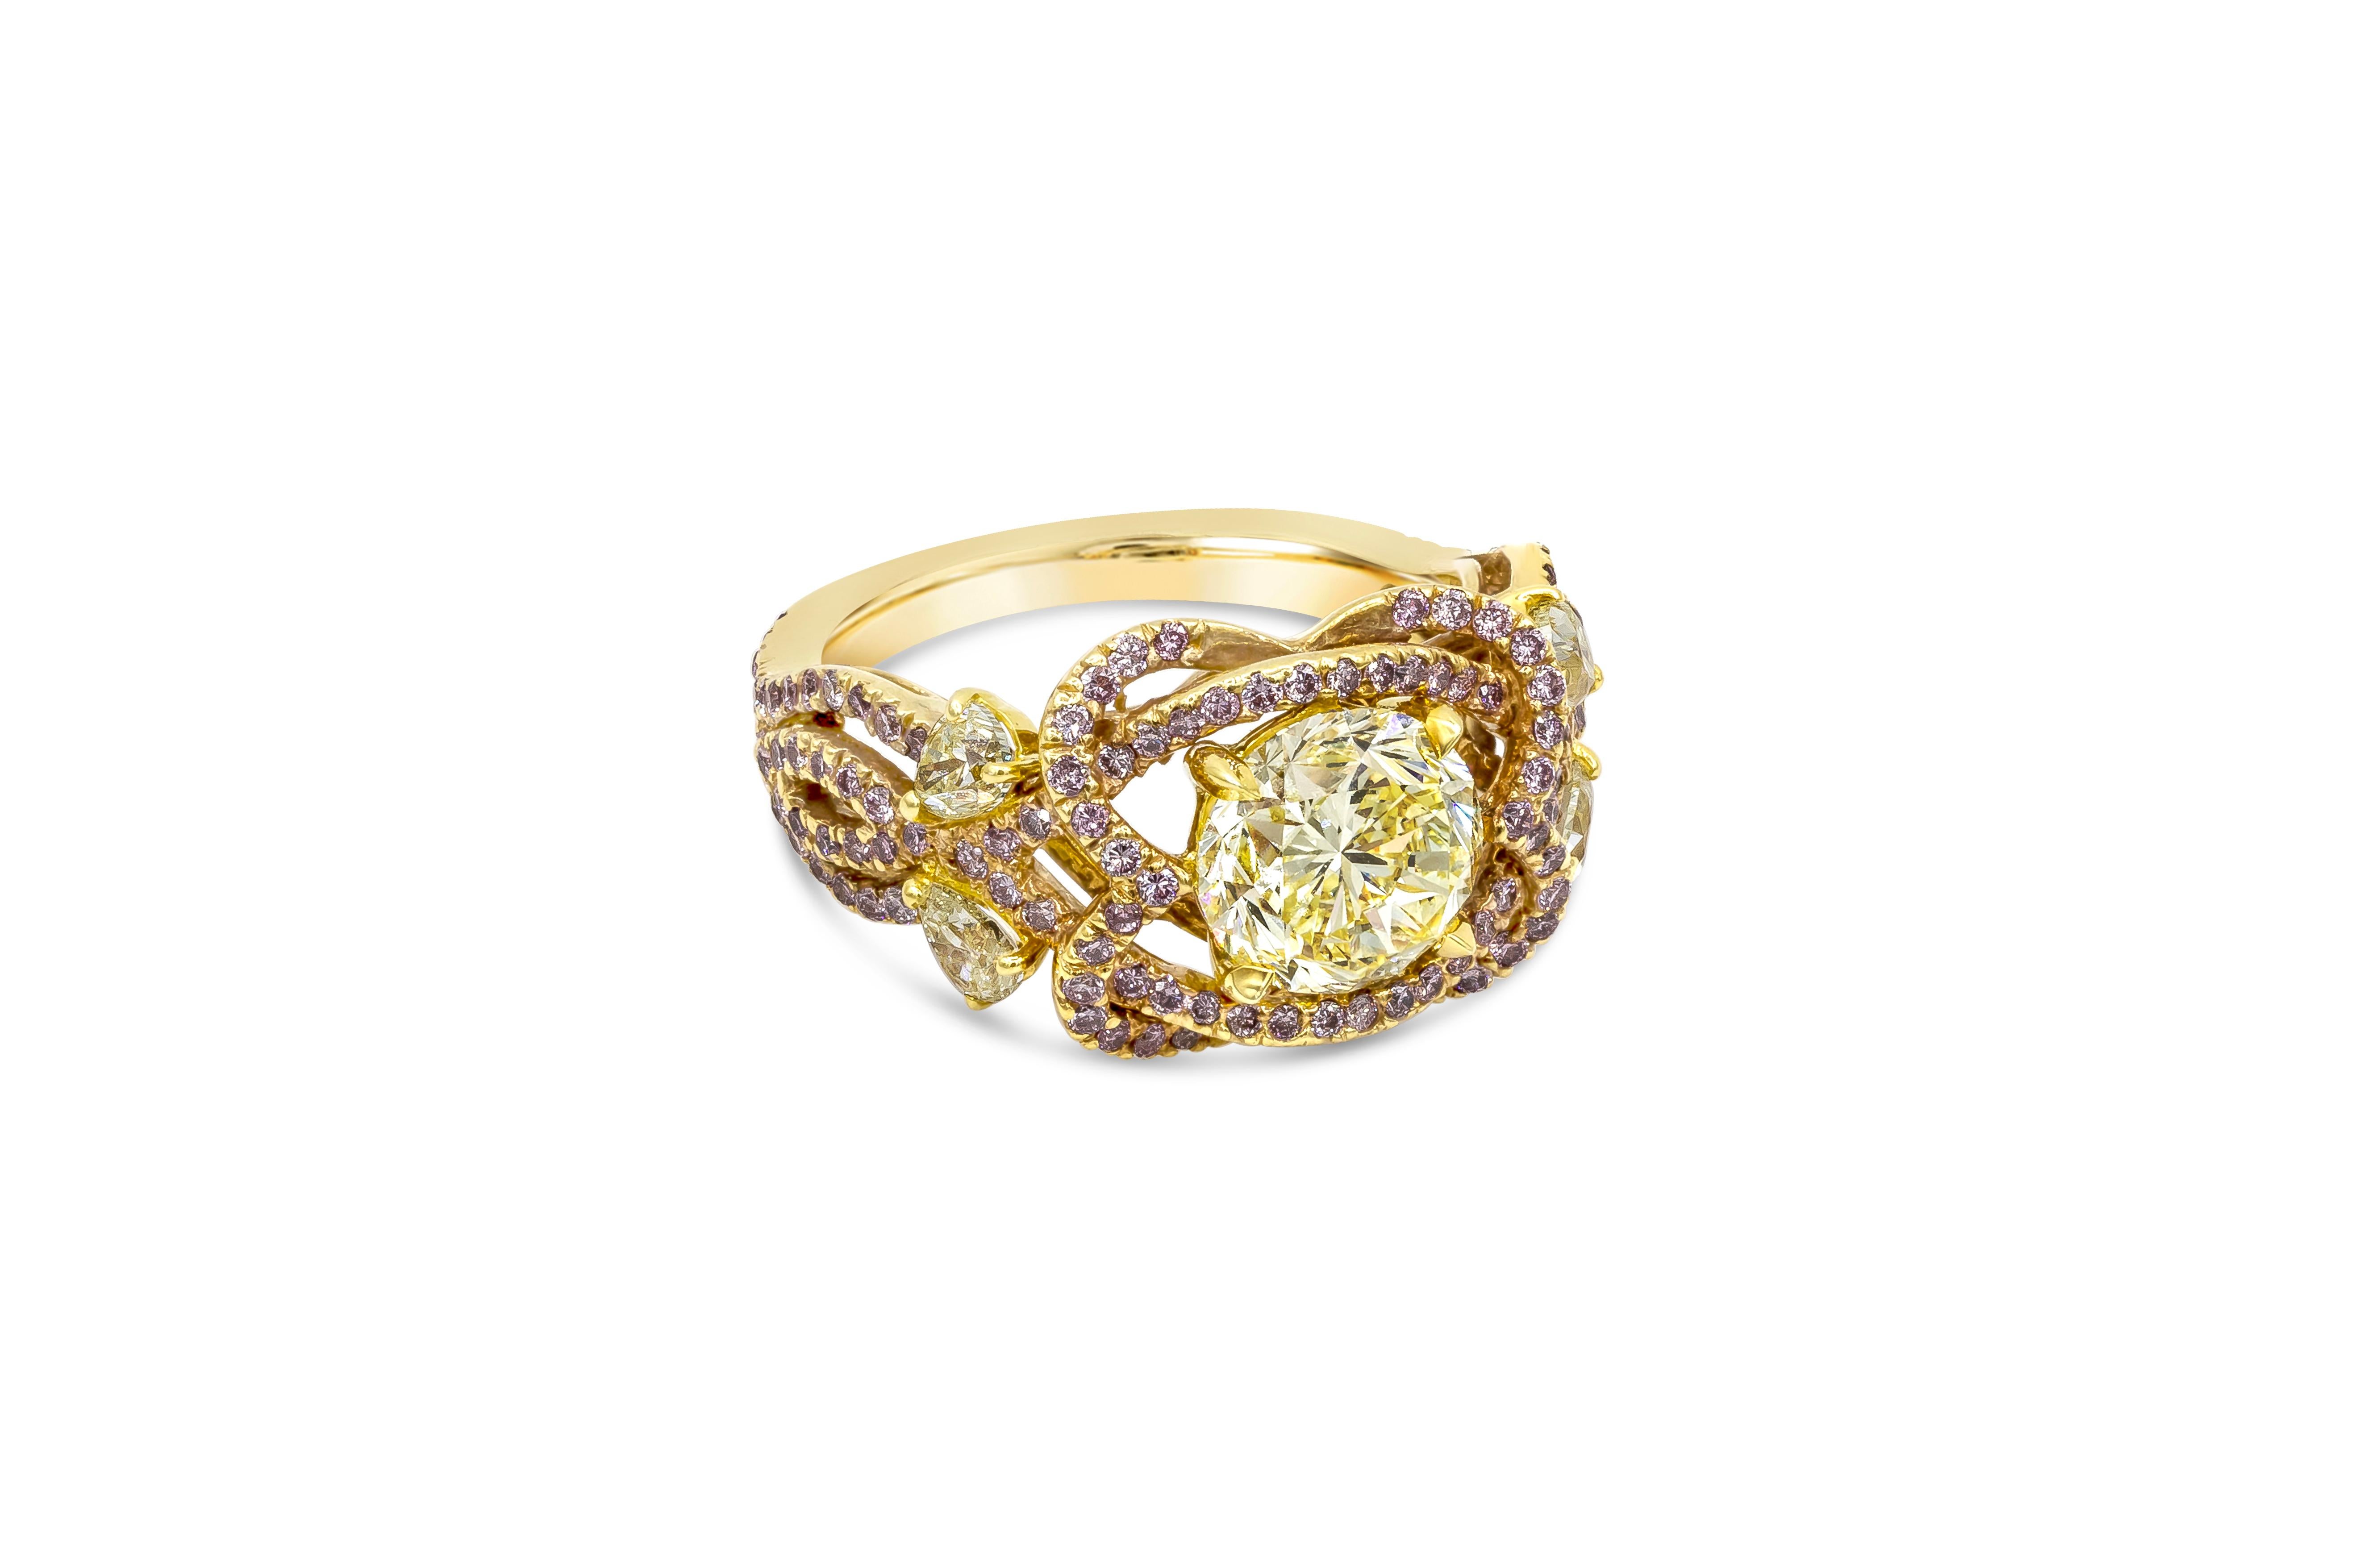 Une bague de fiançailles unique et à la mode, mettant en valeur un diamant rond de taille brillant de 1,97 carats certifié par la GIA de couleur jaune intense et de pureté VS1. Le diamant central est serti dans un anneau ajouré, au design complexe,